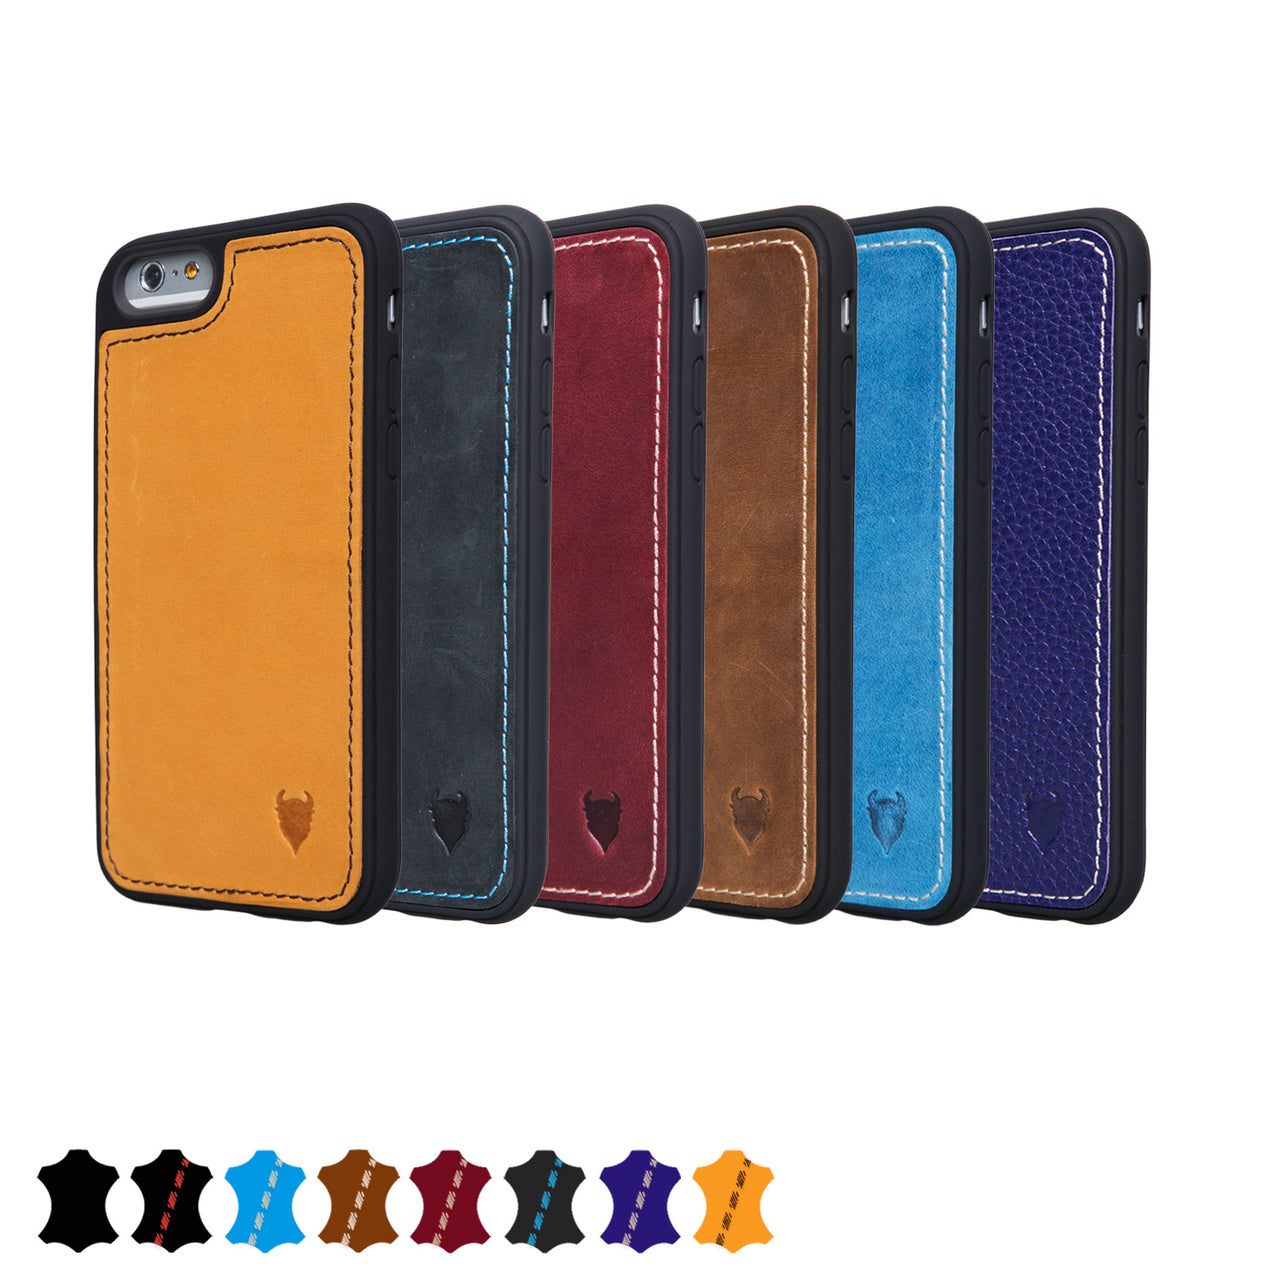 iPhone 6/6s Genuine Leather Tough Case | Artisancase